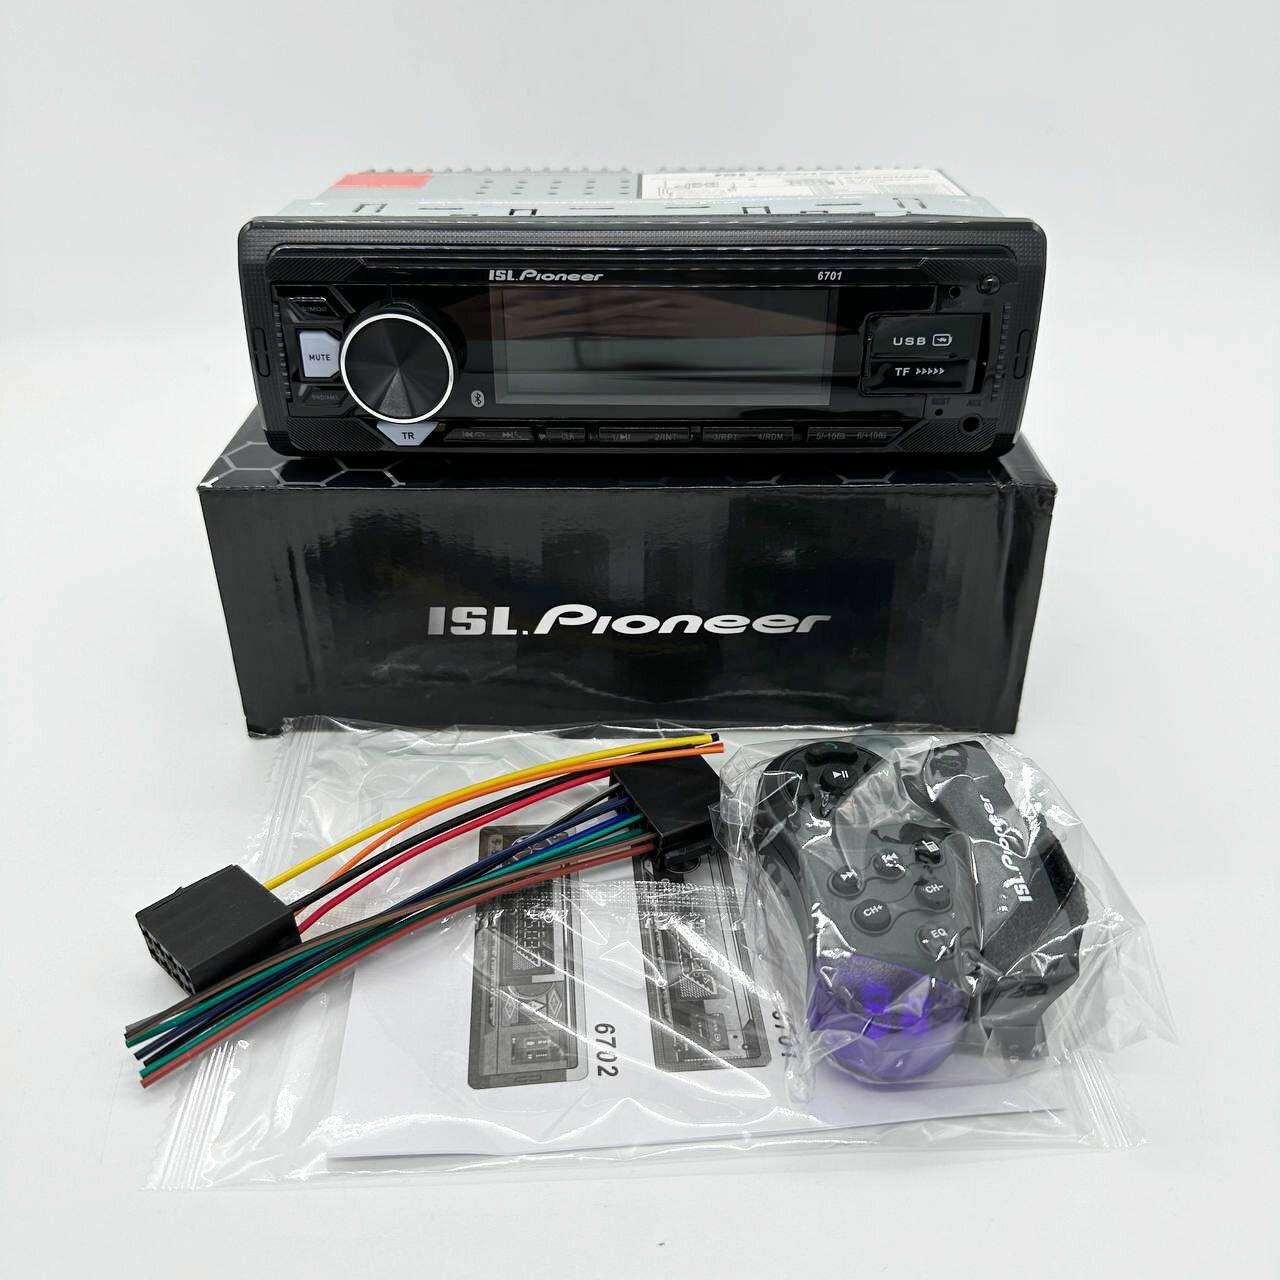 Автомагнитола в авто Pioneer 1 DIN / Автомобильная магнитола с Bluetooth в машину / Магнитофон Пионер с USB, AUX для автомобиля с подсветкой + пульт ДУ